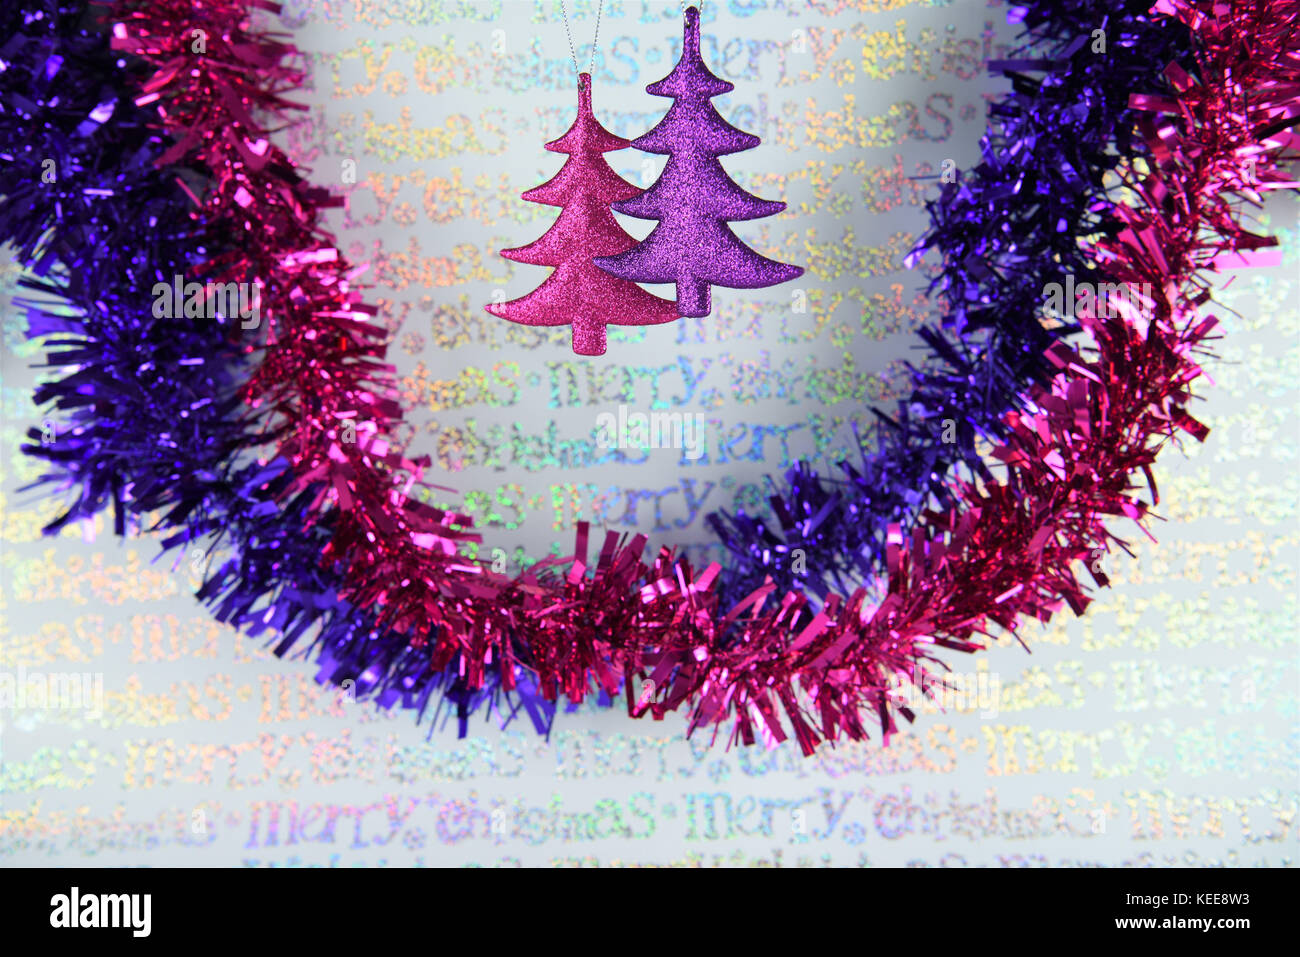 colorful Christmas photography of hanging Christmas tree ...